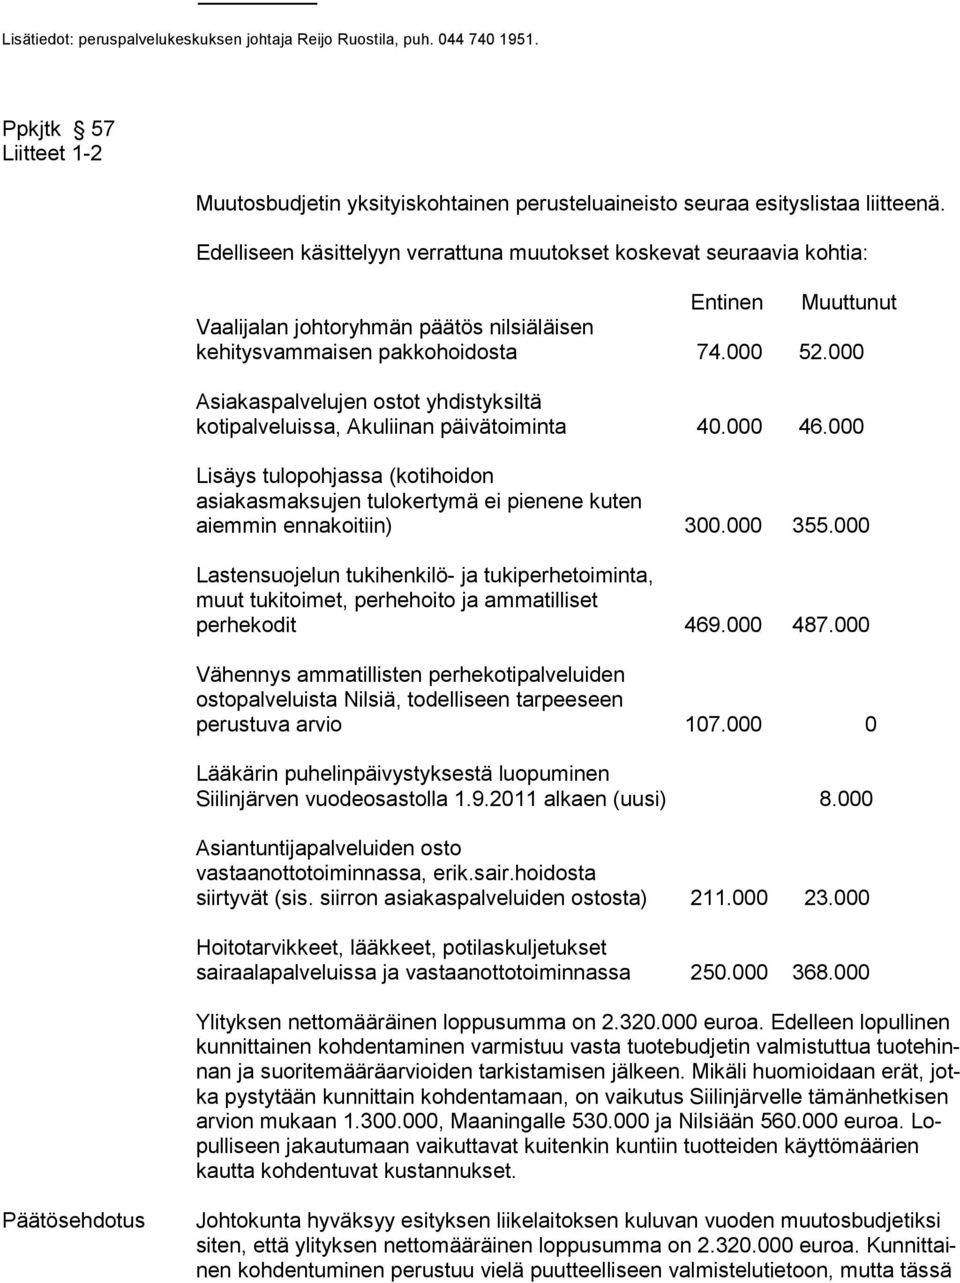 000 Asiakaspalvelujen ostot yhdistyksiltä kotipalveluissa, Akuliinan päivätoiminta 40.000 46.000 Lisäys tulopohjassa (kotihoidon asiakasmaksujen tulokertymä ei pienene kuten aiemmin ennakoitiin) 300.